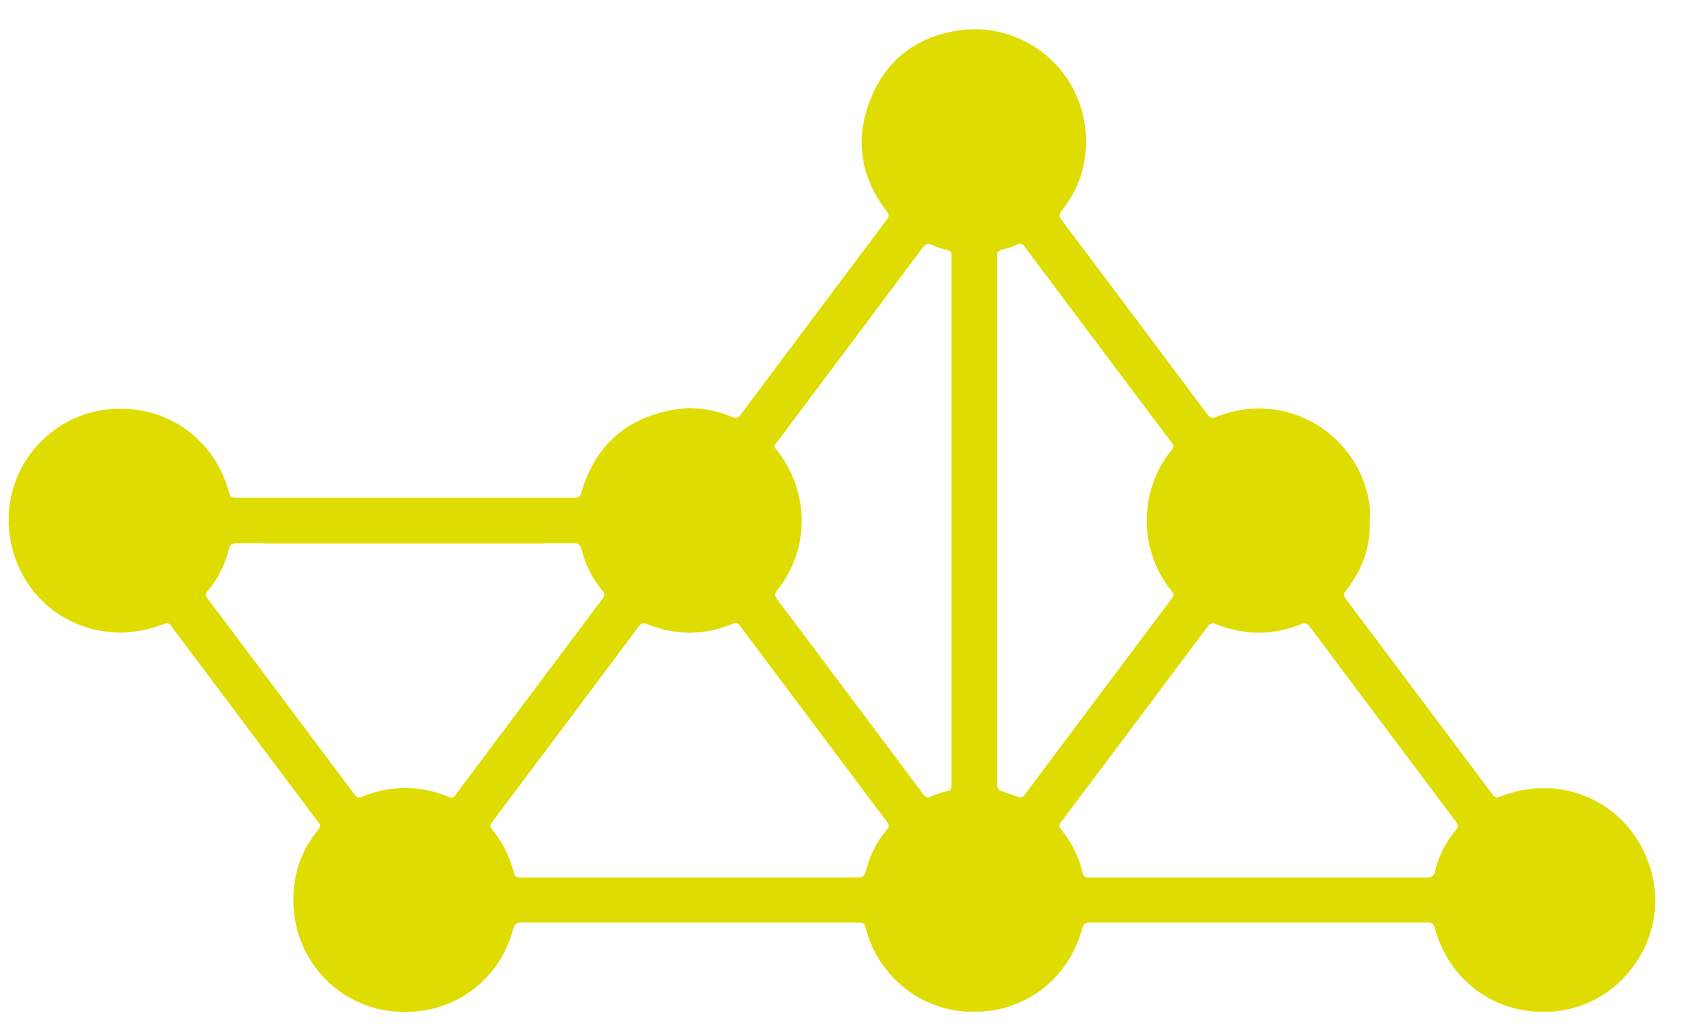 MASS logo motif in yellow